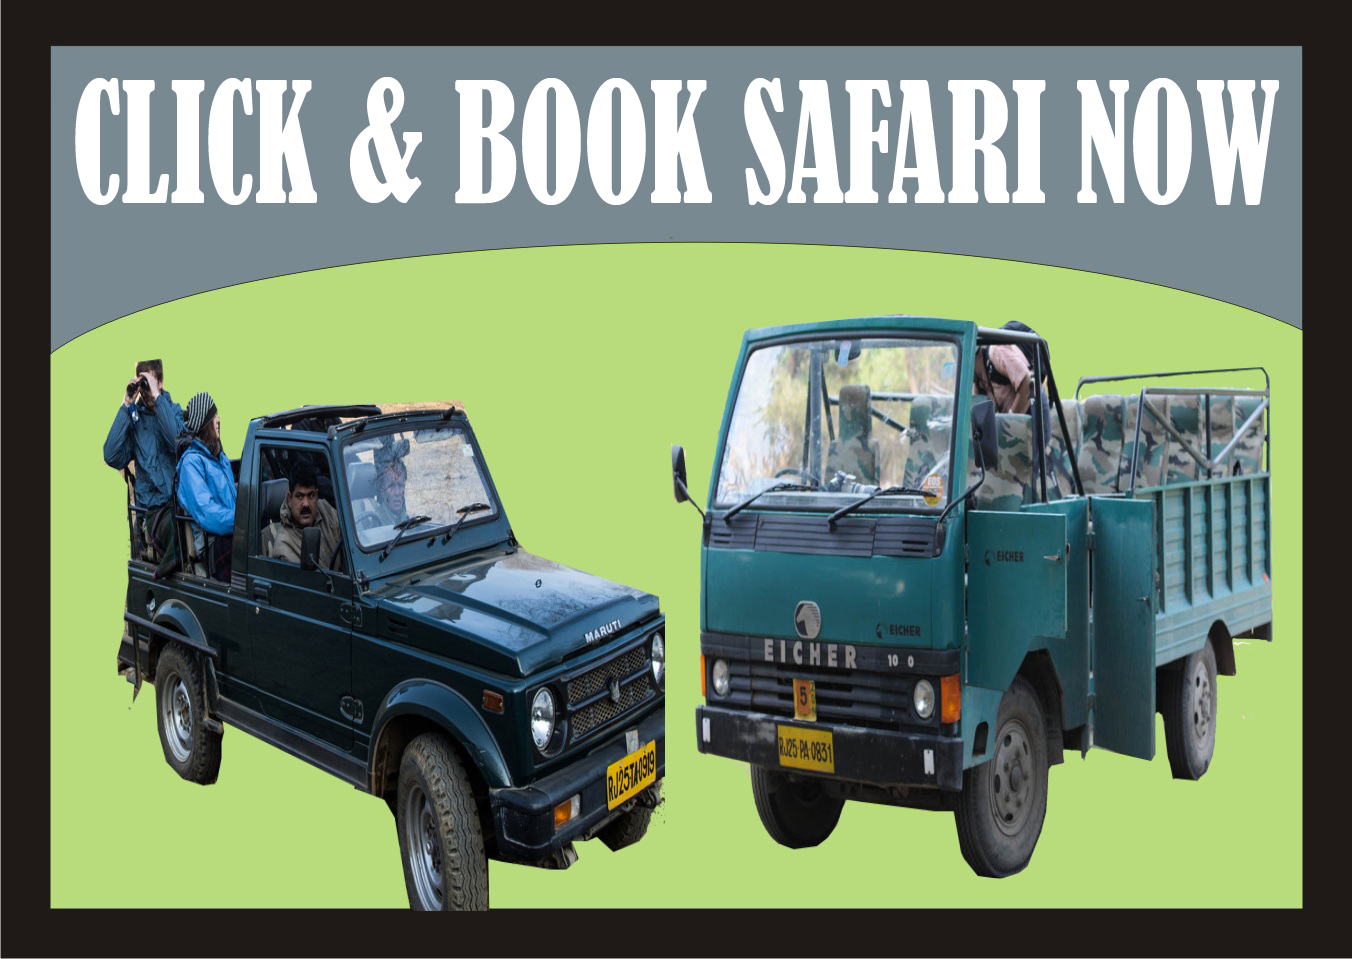 Book a safari